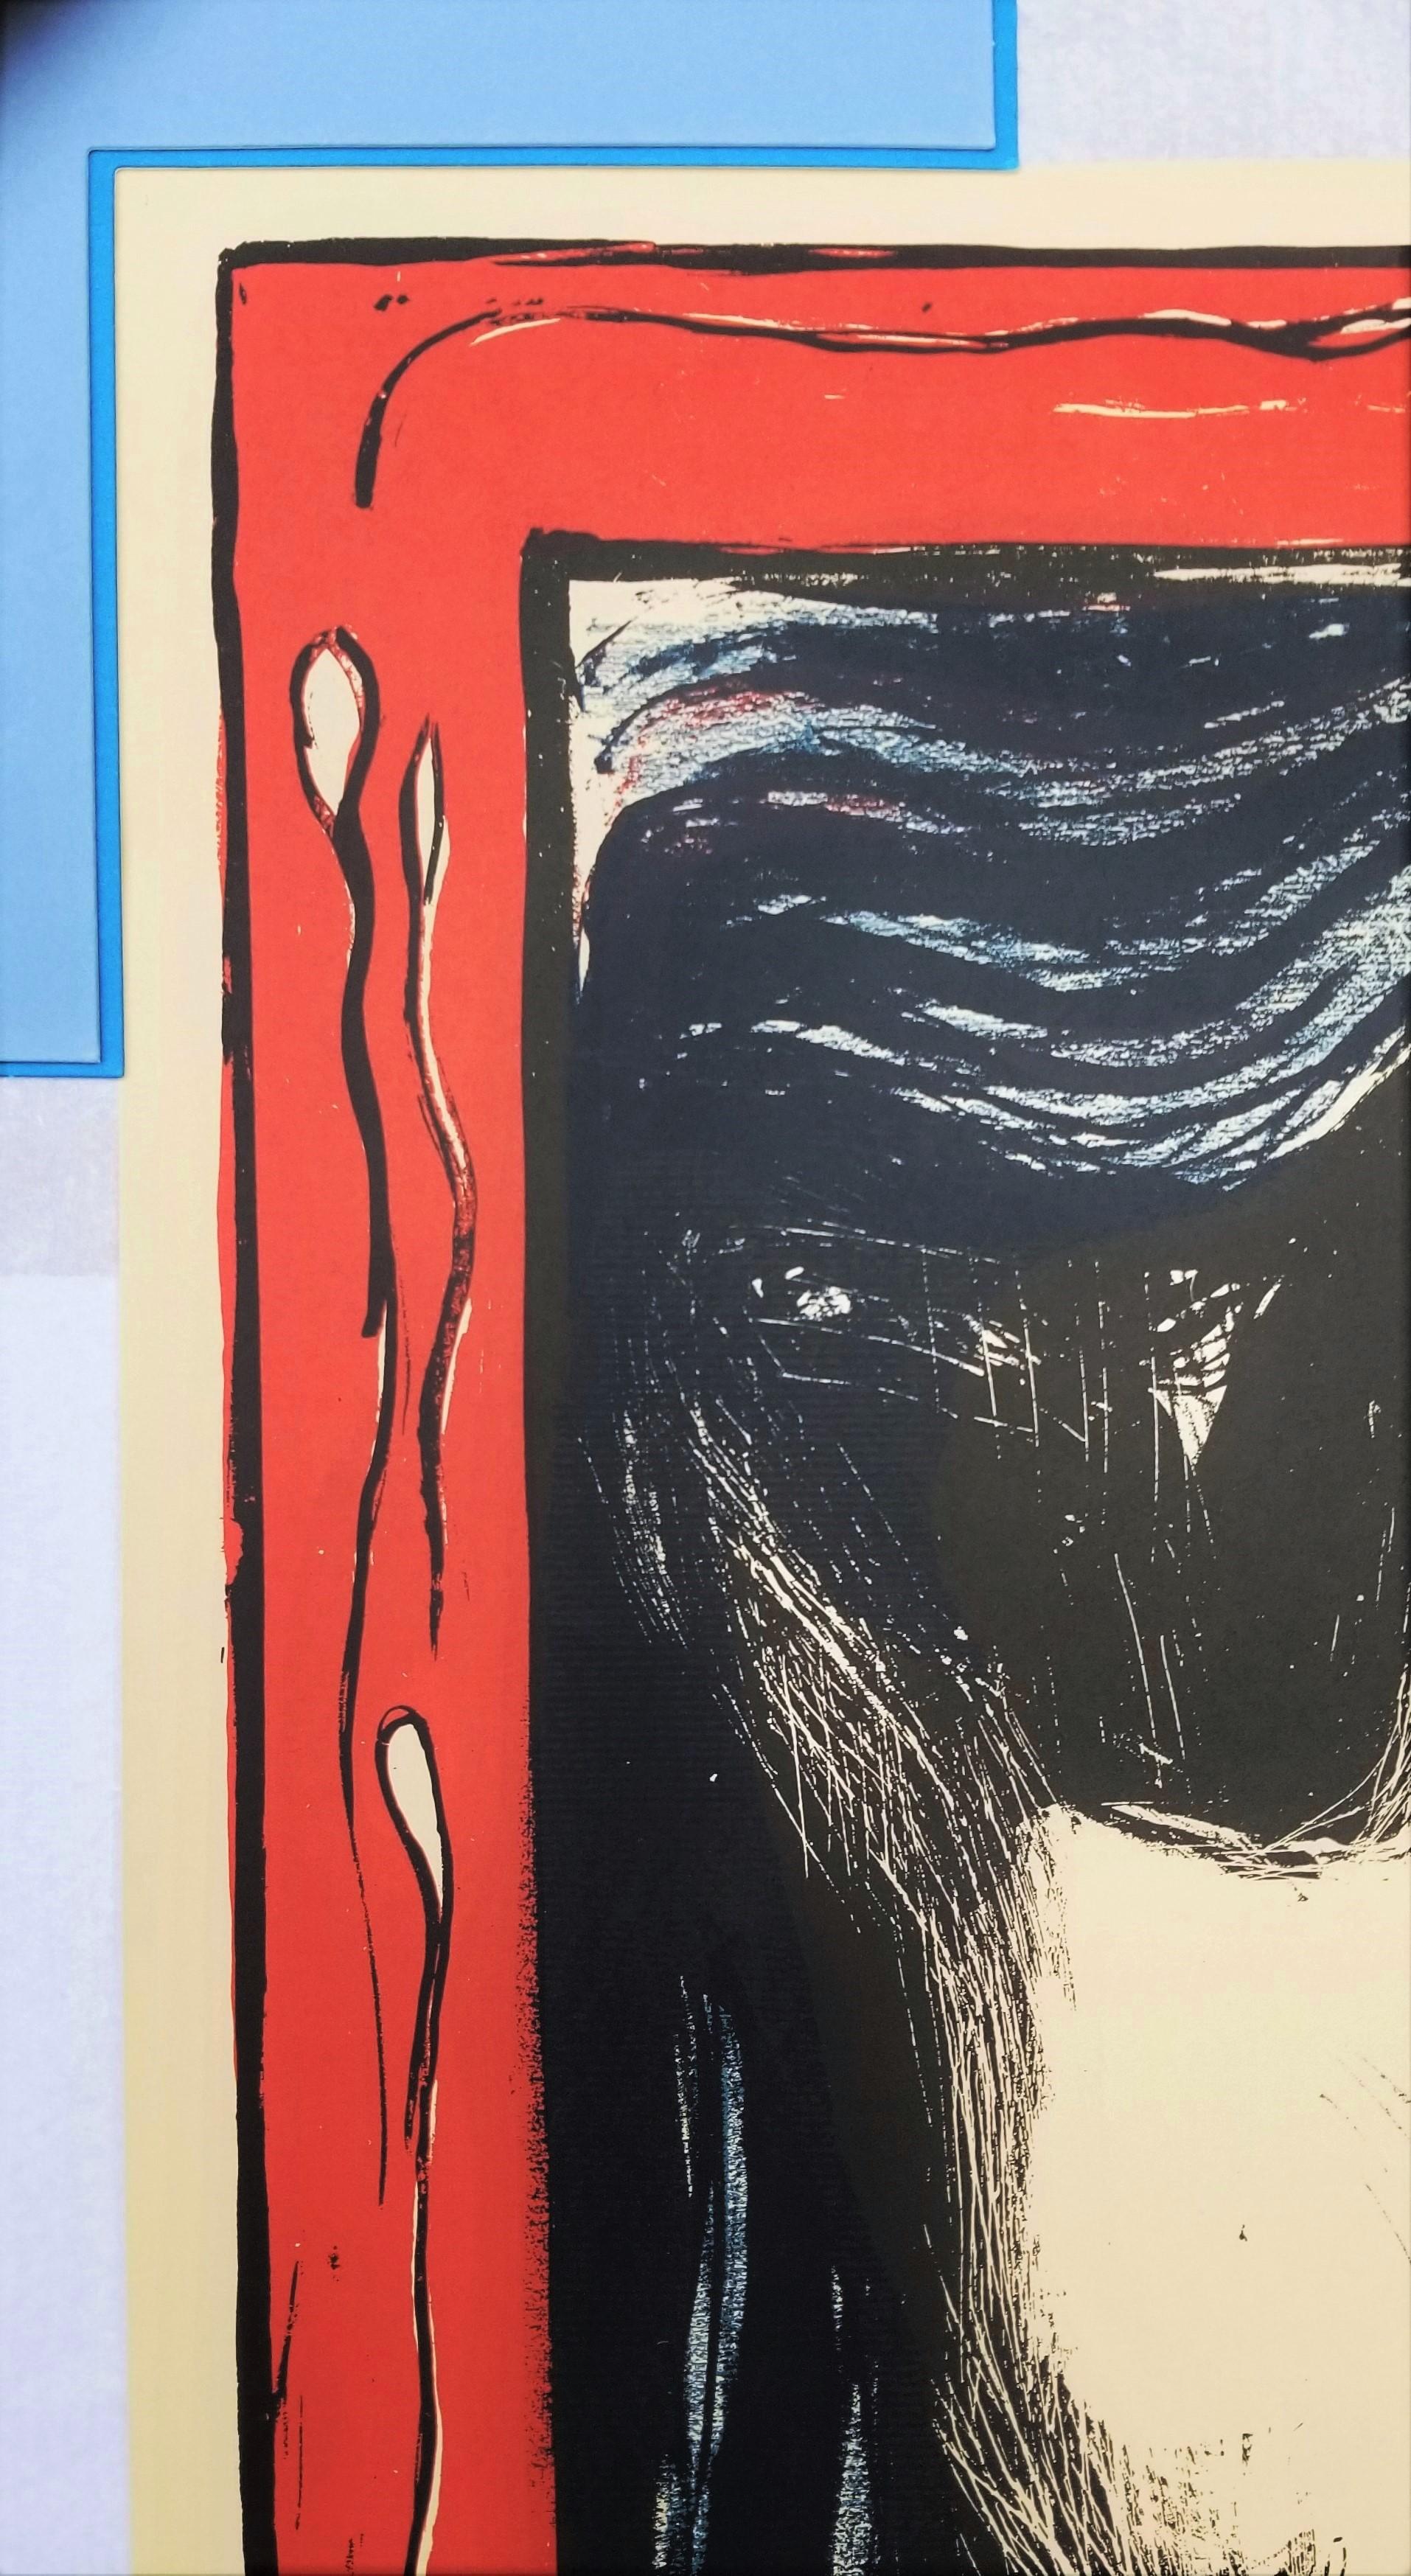 Artist: (after) Edvard Munch (Norwegian, 1863-1944)
Title: 